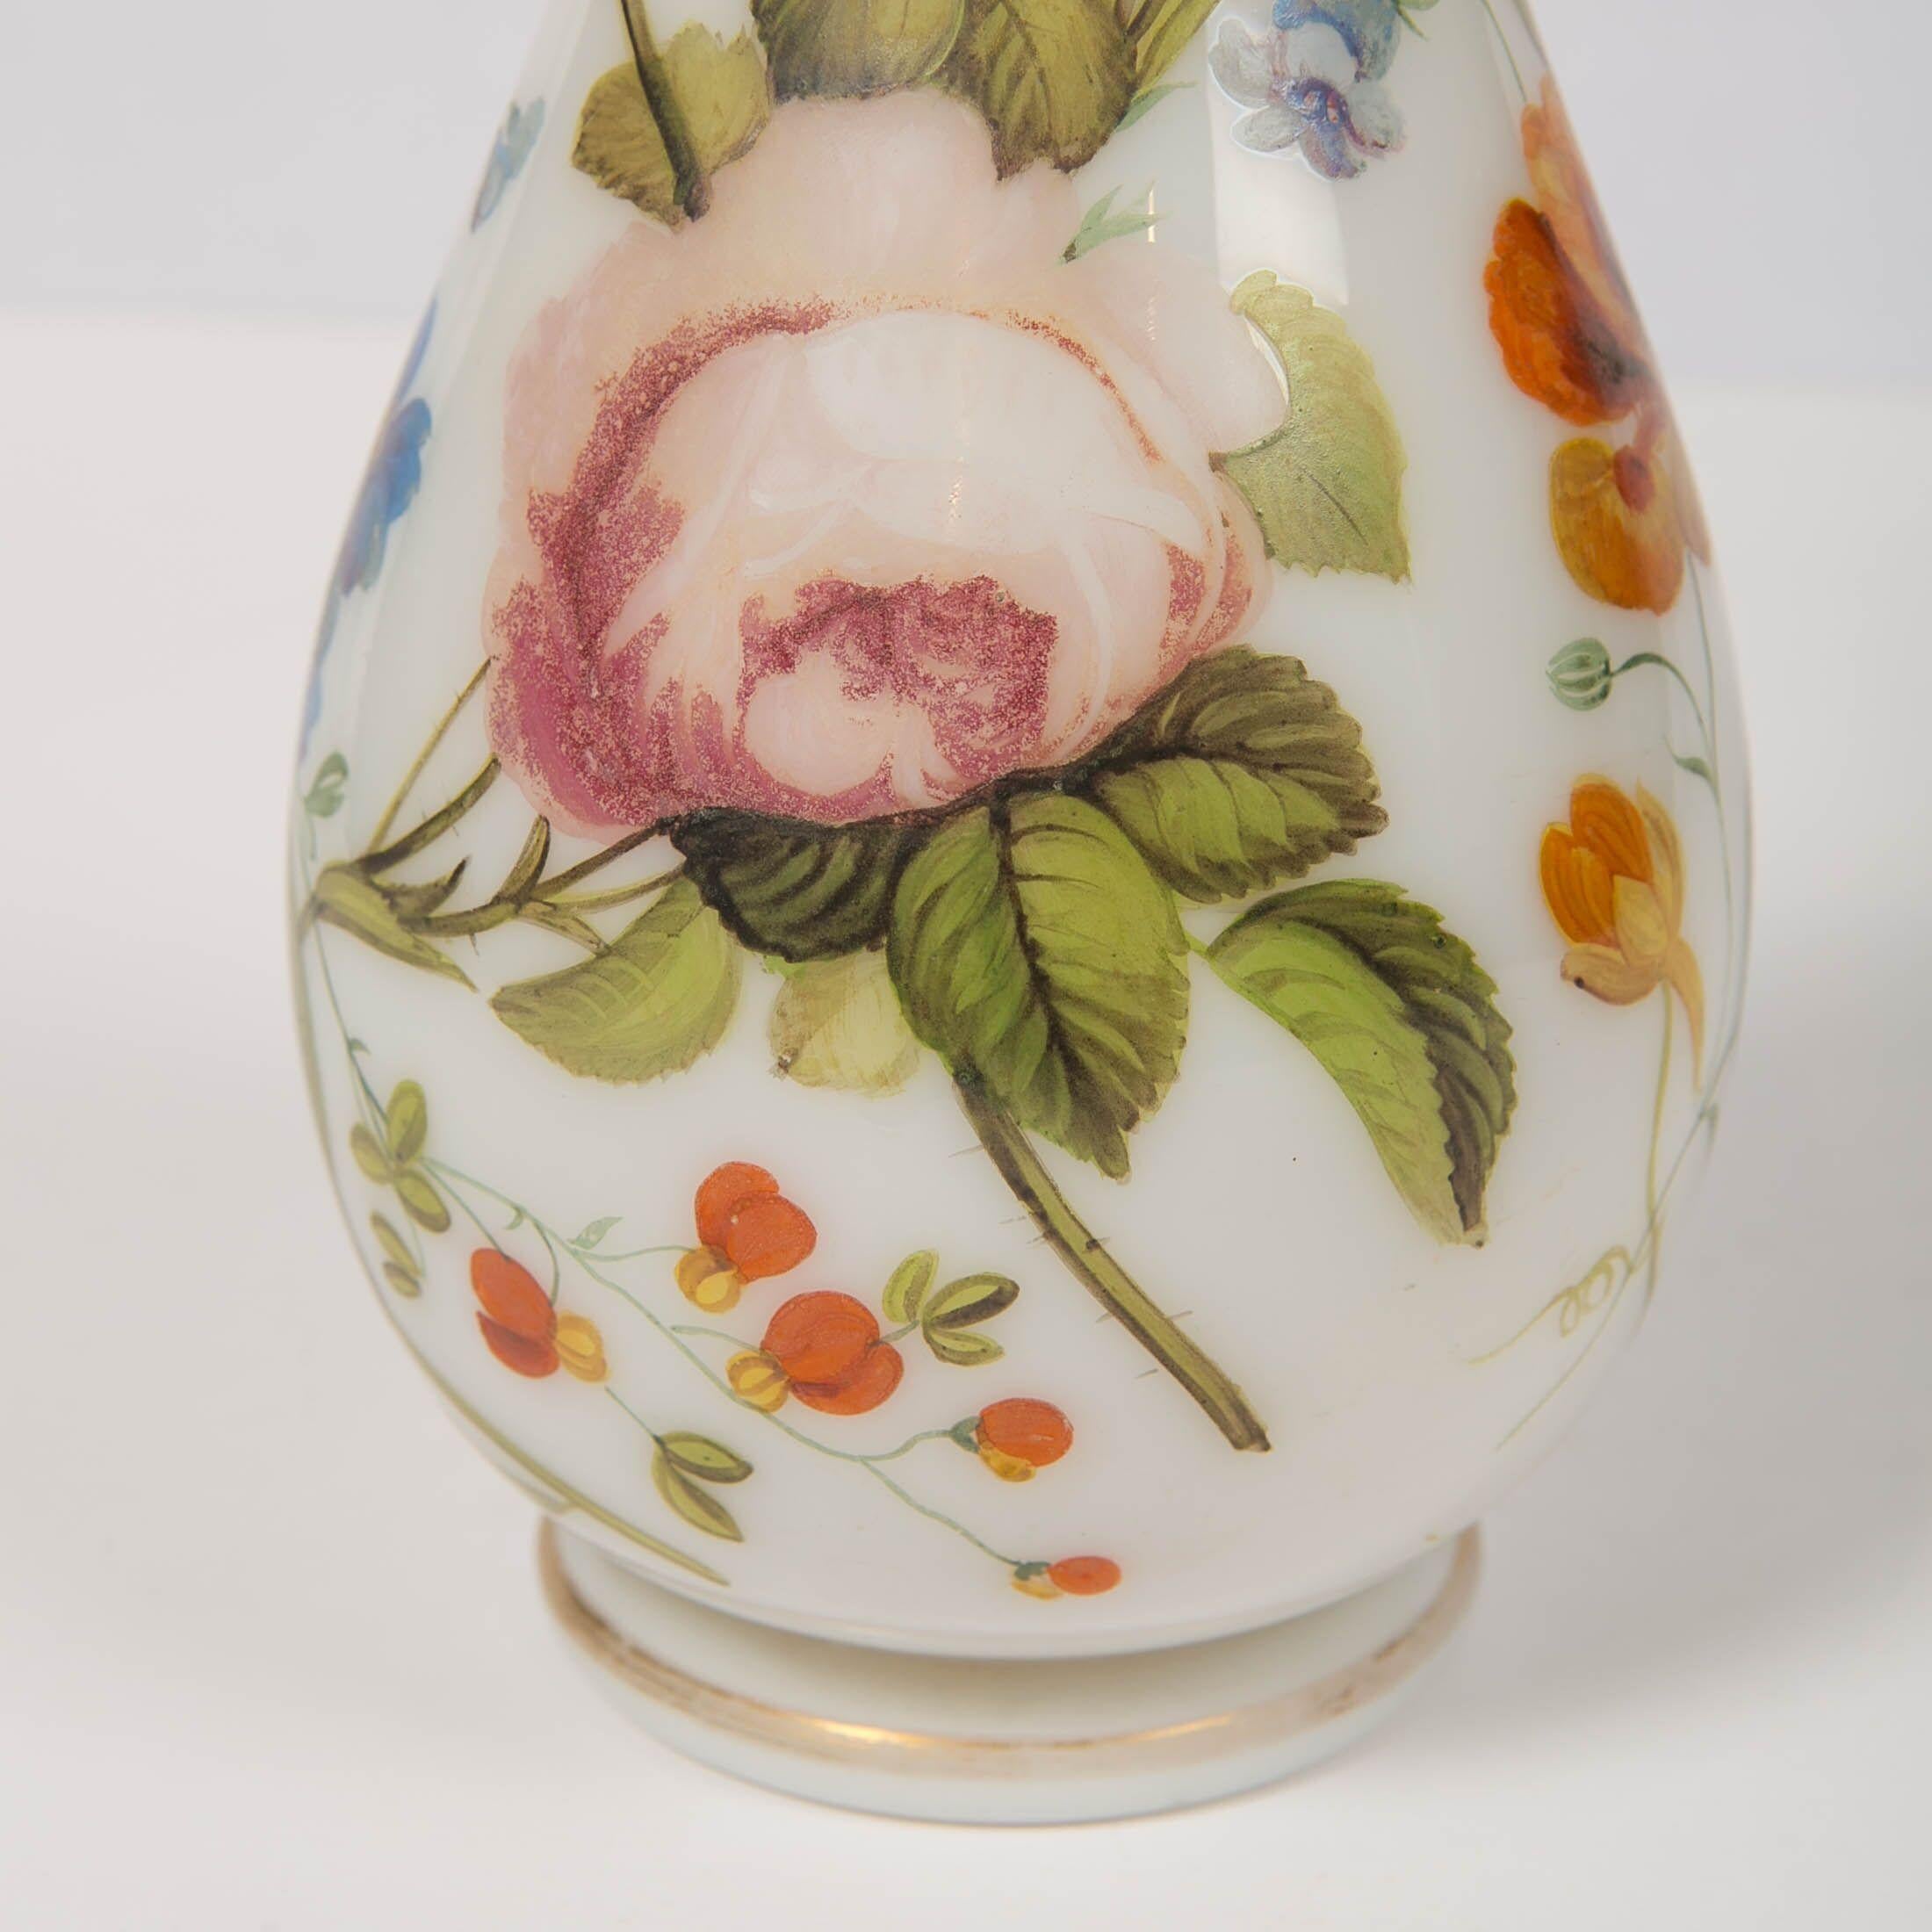 Wir freuen uns, diese Opalvase mit schönen handgemalten Blumen anbieten zu können. 
Das Glas ist mundgeblasen, ohne Nähte und leicht lichtdurchlässig. 
Die Vase ist rundherum mit schönen Rosen, Morning Glory, Lilien und anderen Blumen am Stiel